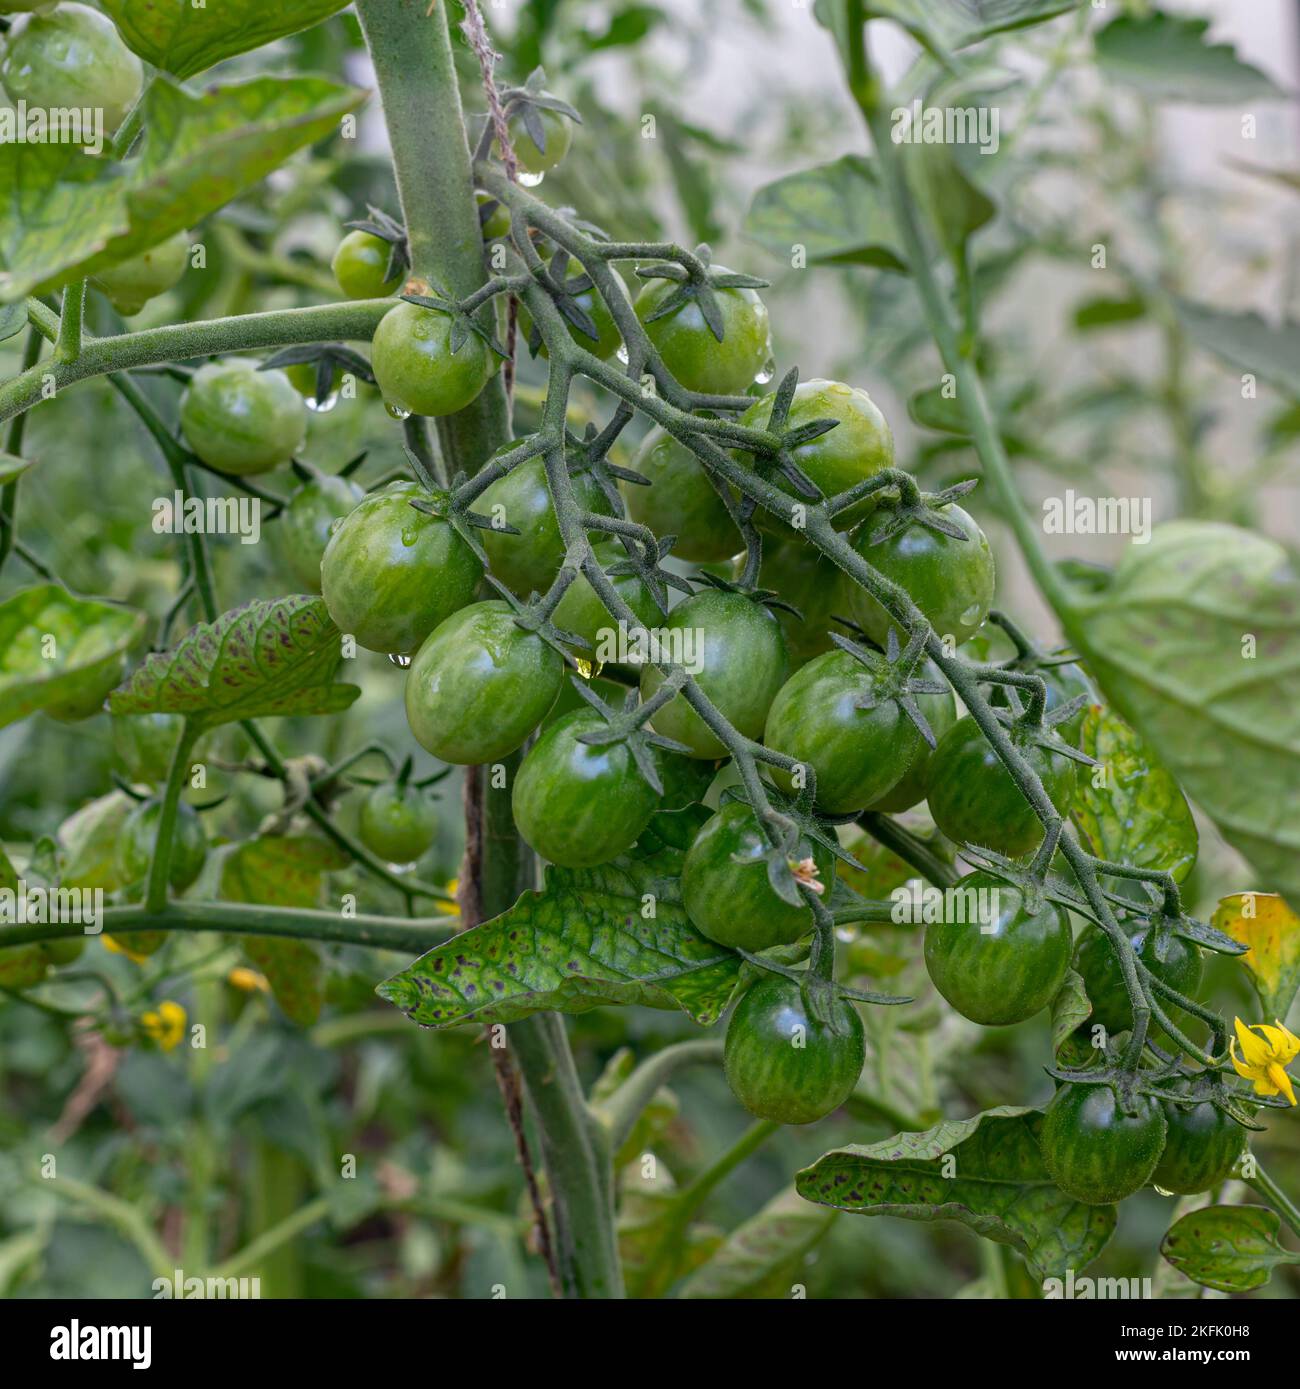 Tomate-Pflanzen im Gewächshaus-grüne Tomaten-Plantage. Ökologischer Landbau, junge Tomaten Pflanzen Wachstum im Gewächshaus. Stockfoto